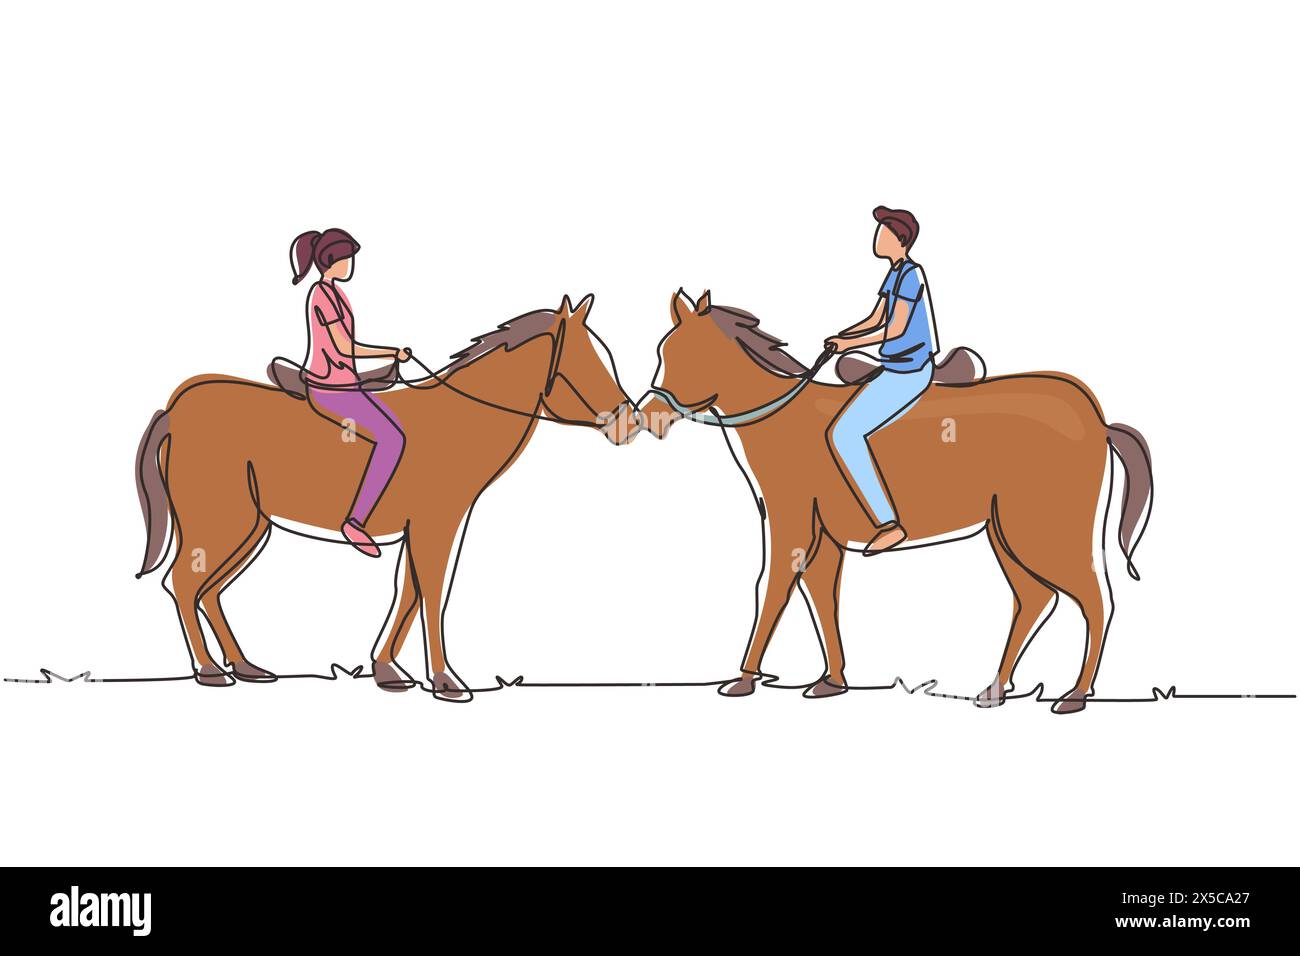 Linea singola continua che disegna una coppia romantica in amore a cavallo. Giovani uomini e donne si incontrano per uscire con ride Horse. Fidanzamento e relazione d'amore Illustrazione Vettoriale